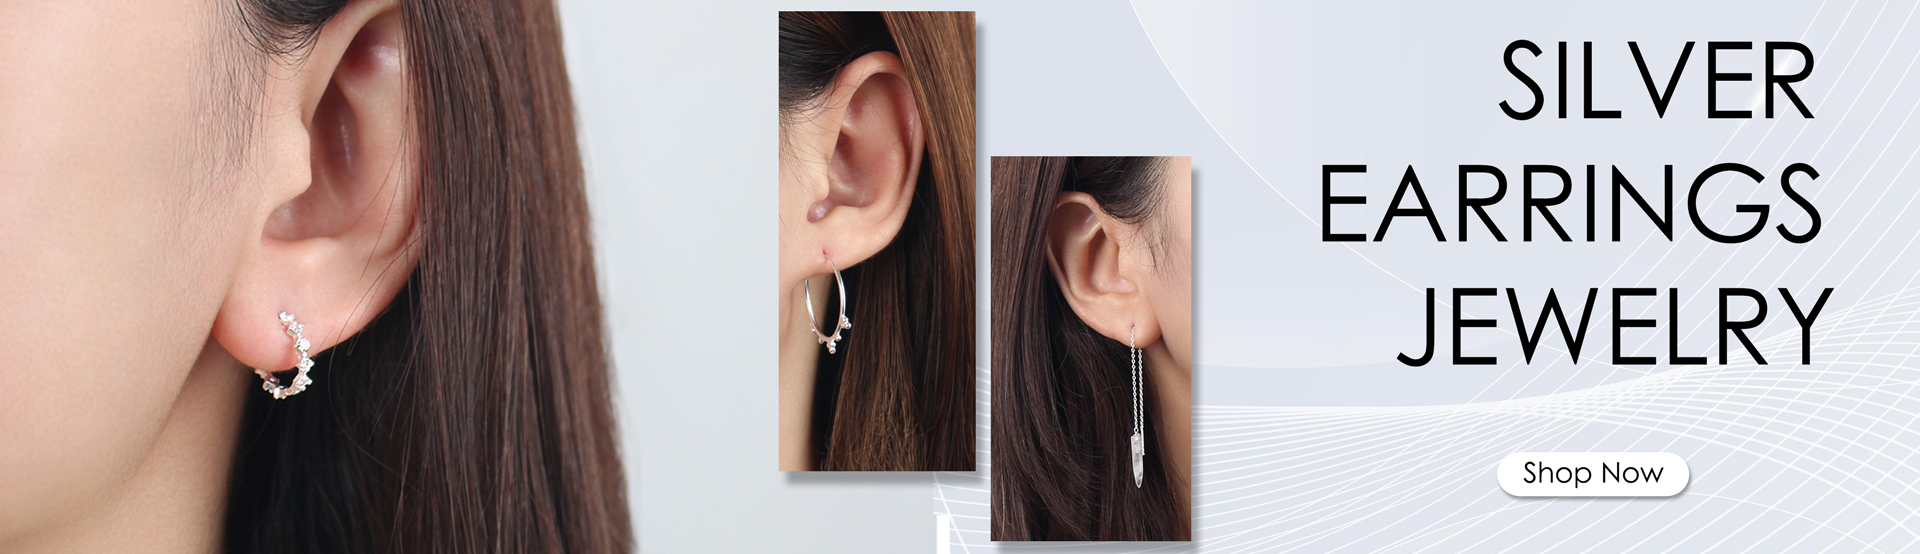 Silver-earrings